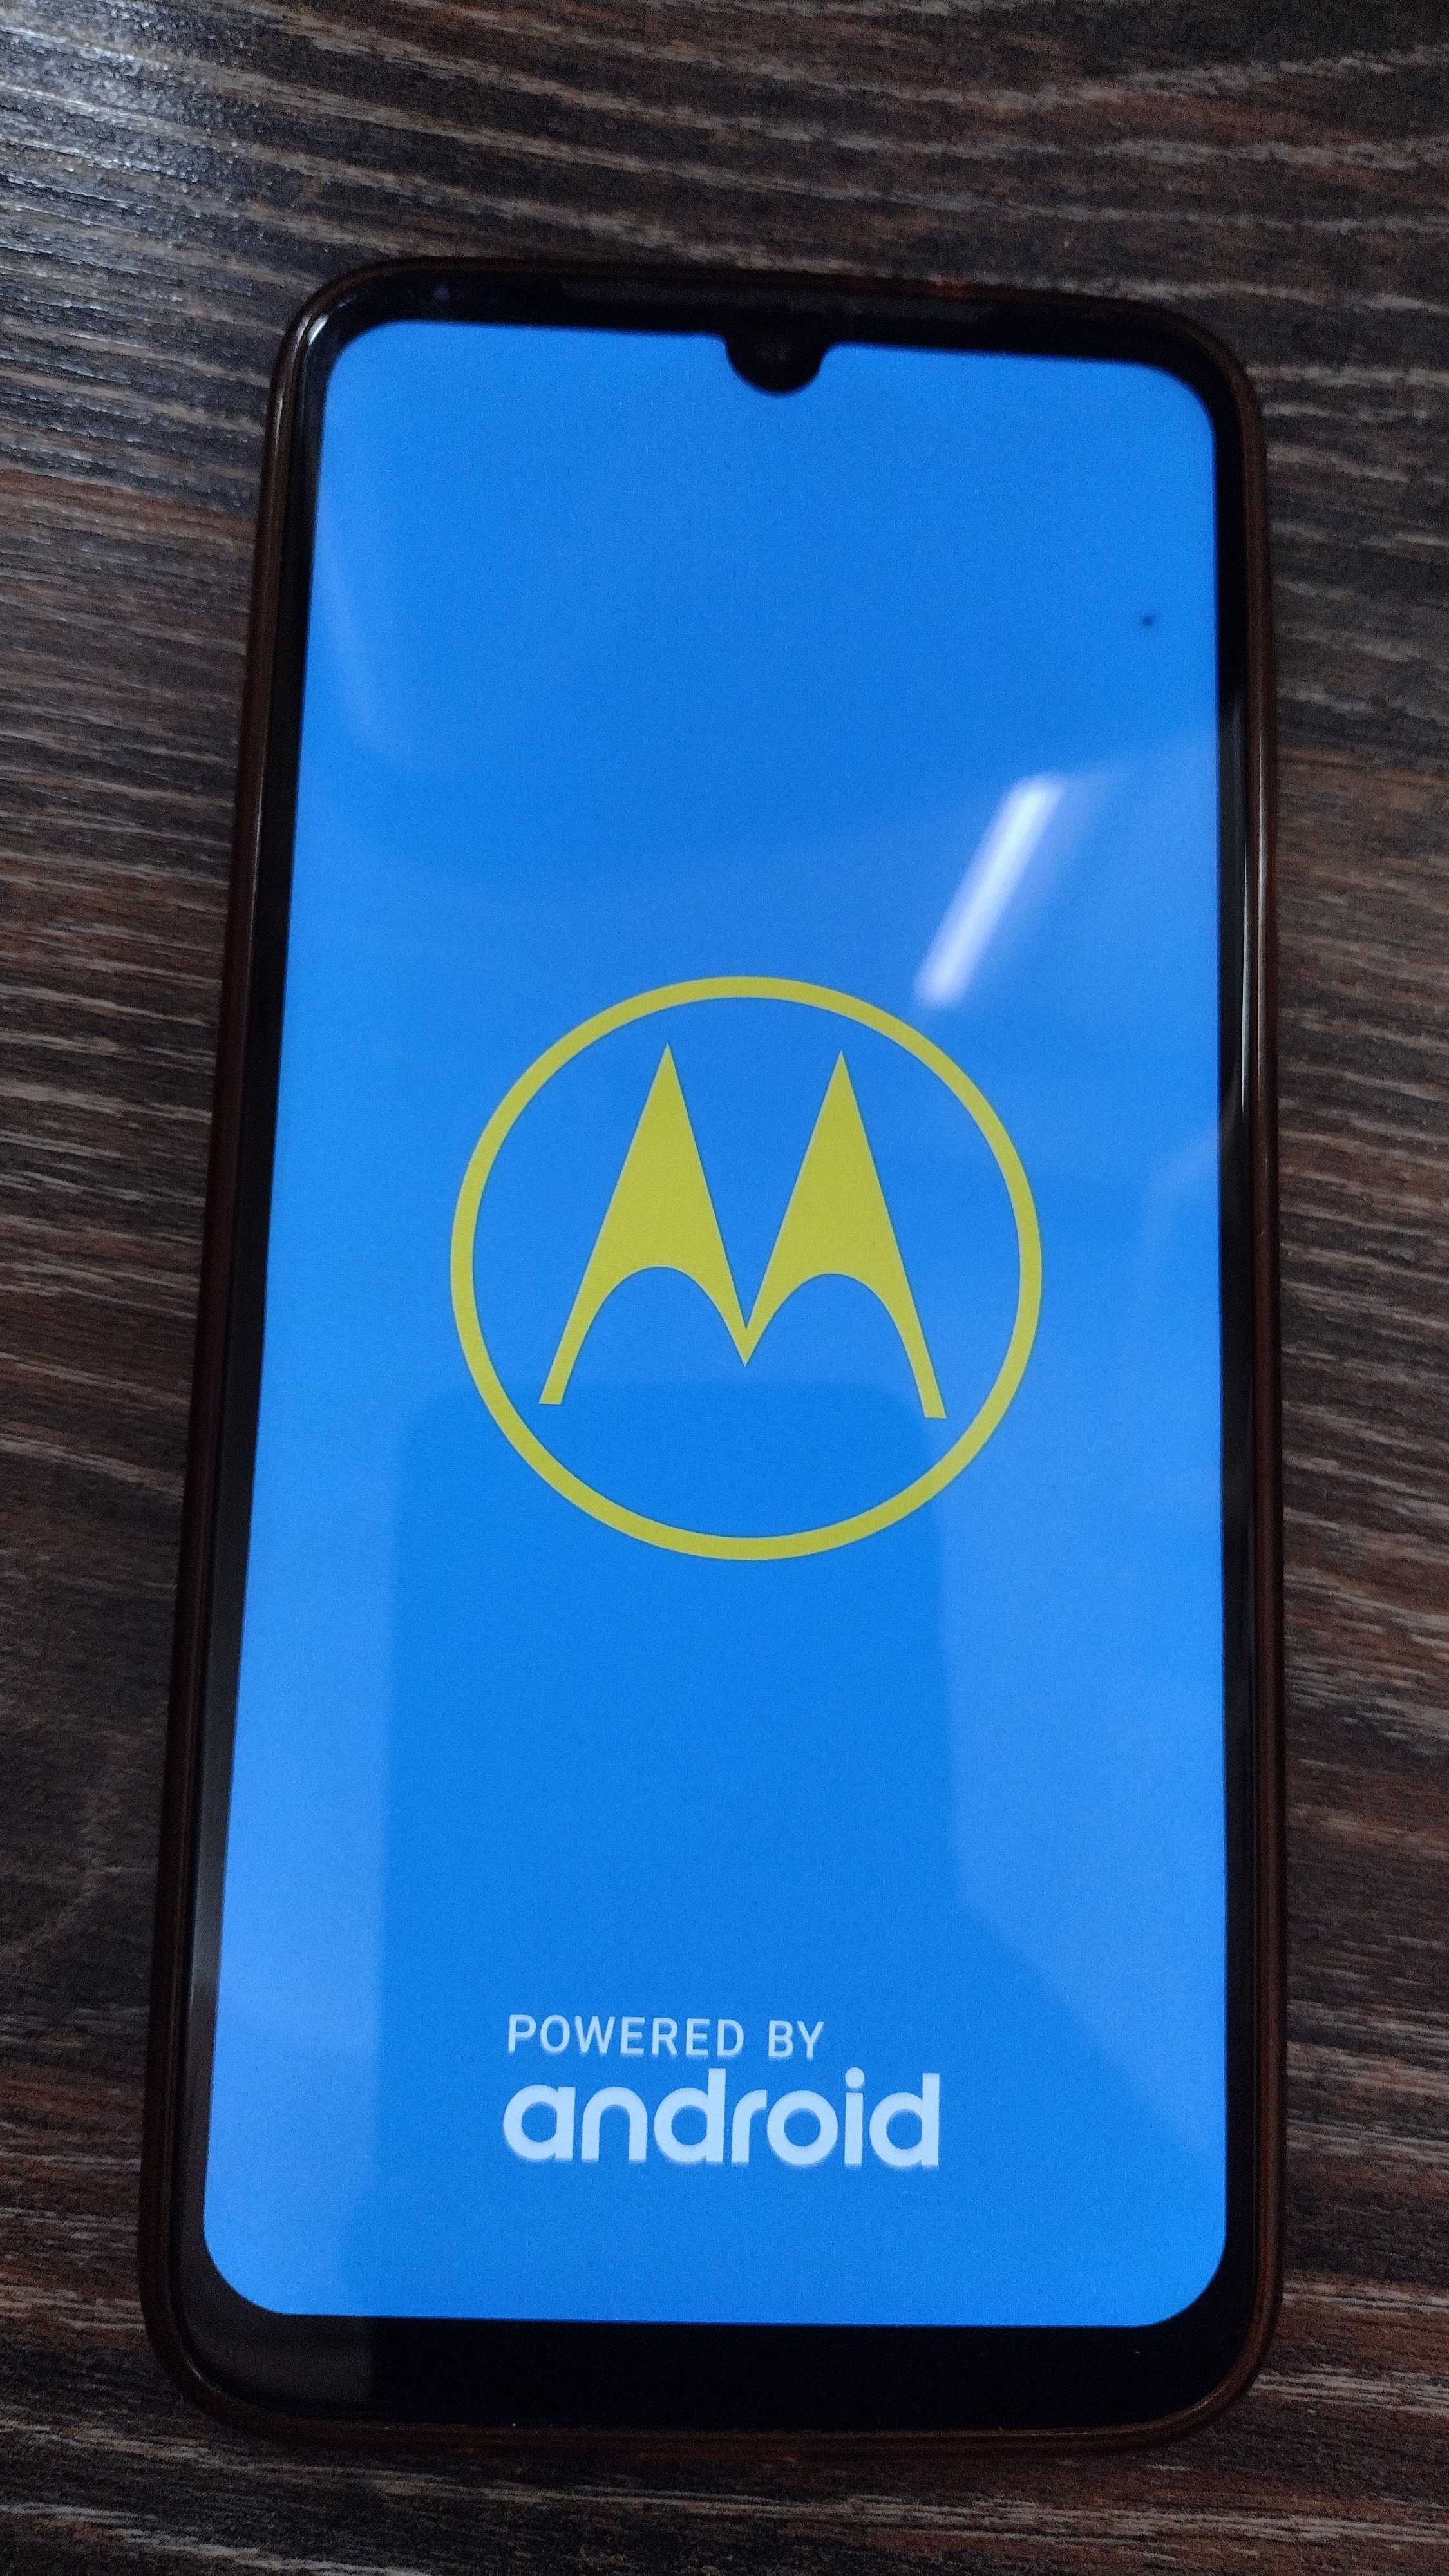 Motorola G8 Plus